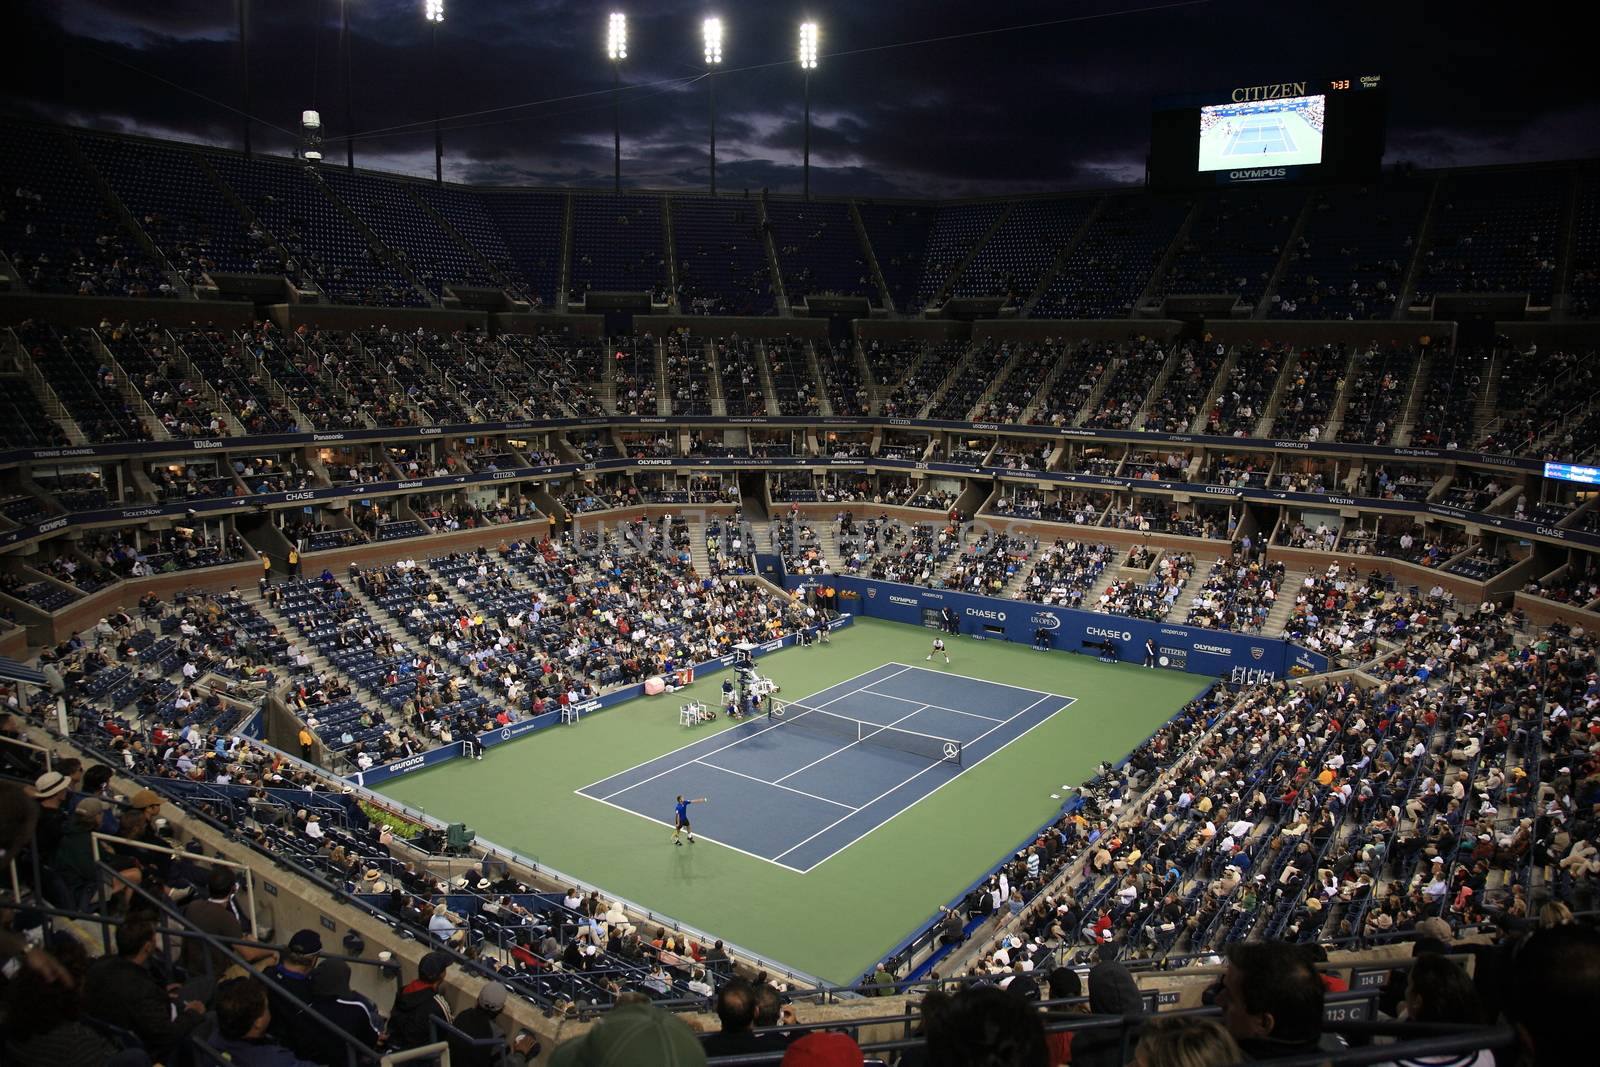 U.S. Open Tennis - Arthur Ashe Stadium by Ffooter